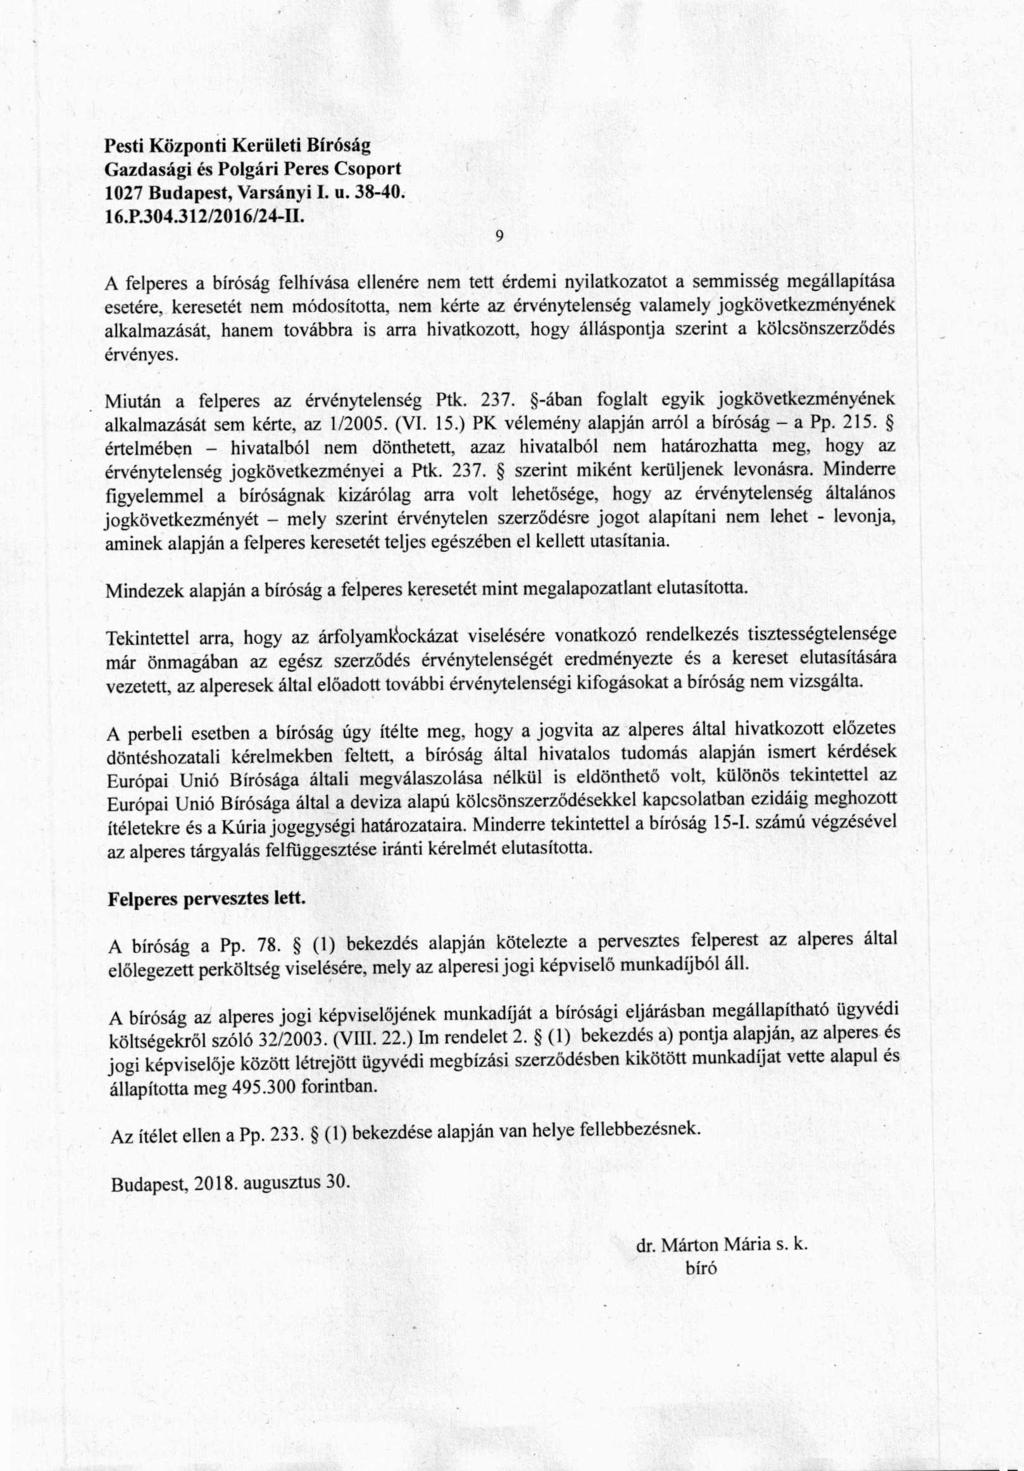 Pesti Központi Kerületi Biróság 1027 Budapest y Varsányi I. u. 38-40. 16.P.304.312/2016/24-II.